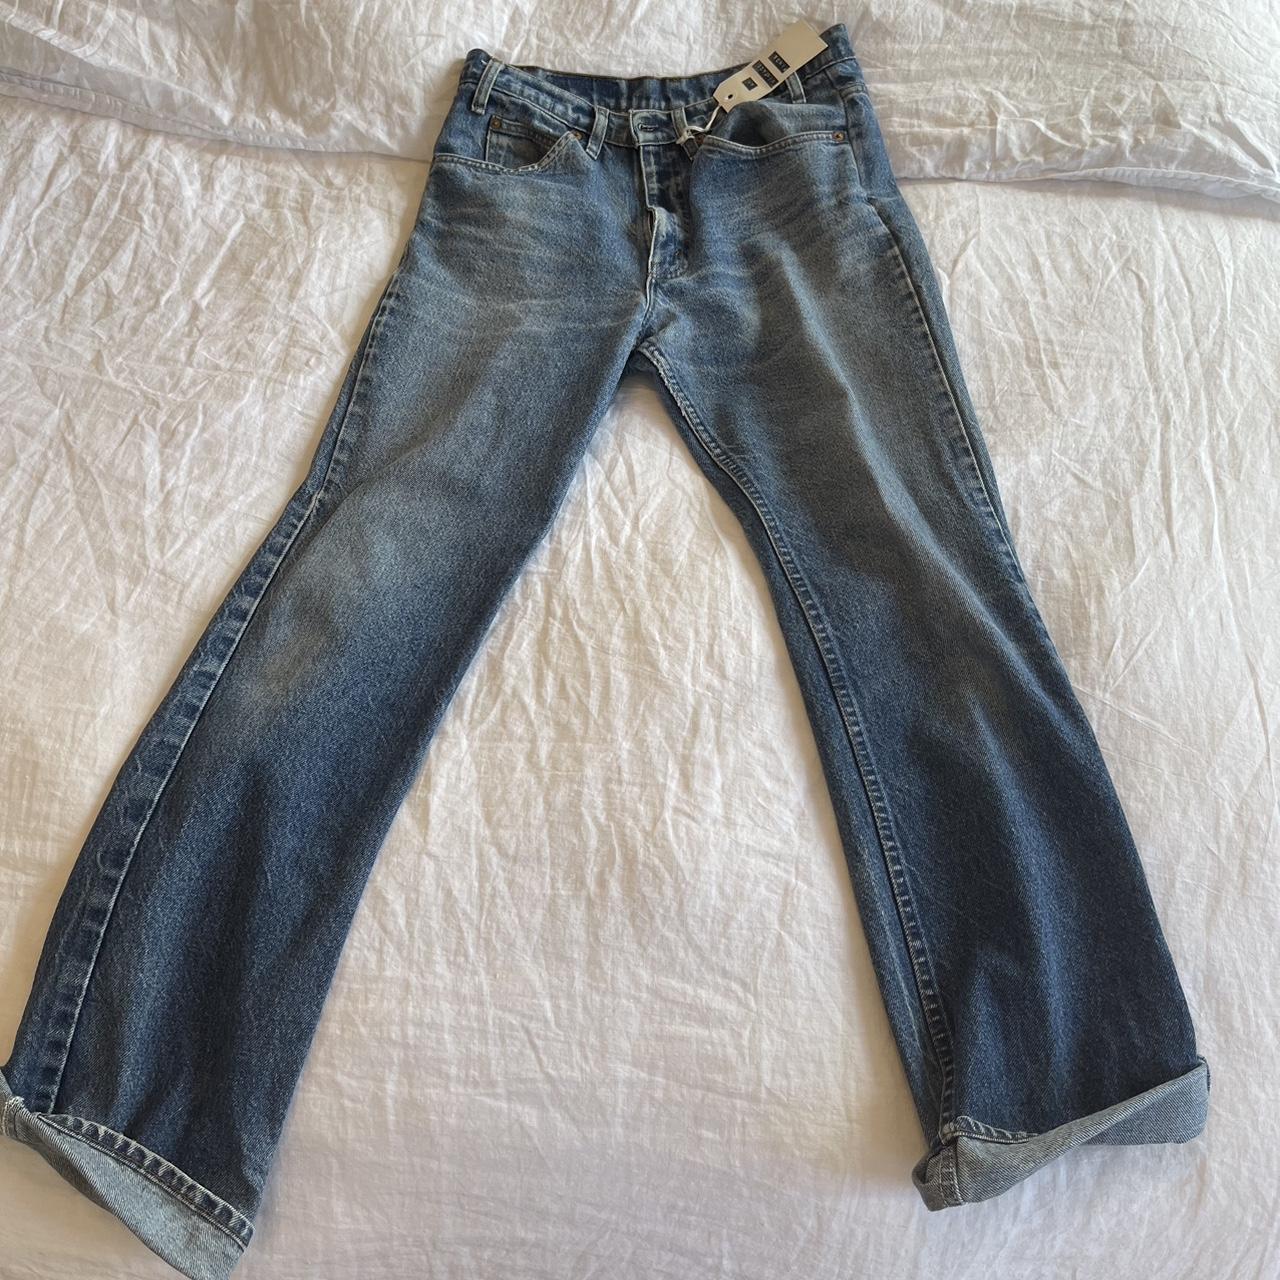 Vintage Orange-tab Levi jeans Fits a size 30 or 31... - Depop